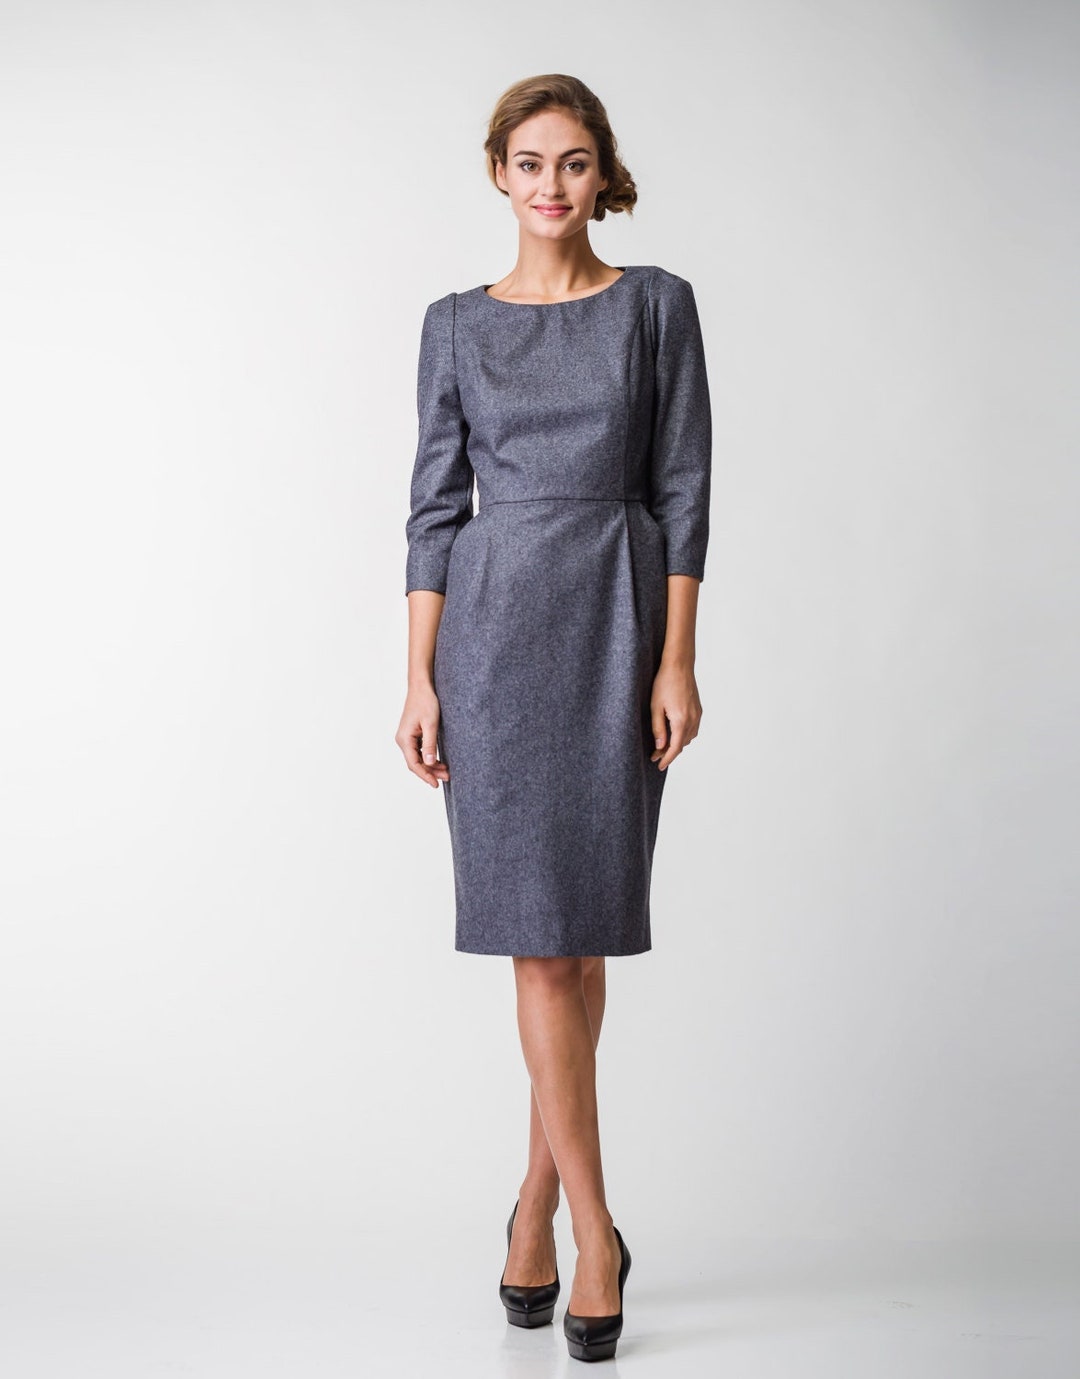 Gray Wool Pencil Dress Warm Office Dress Winter Business - Etsy